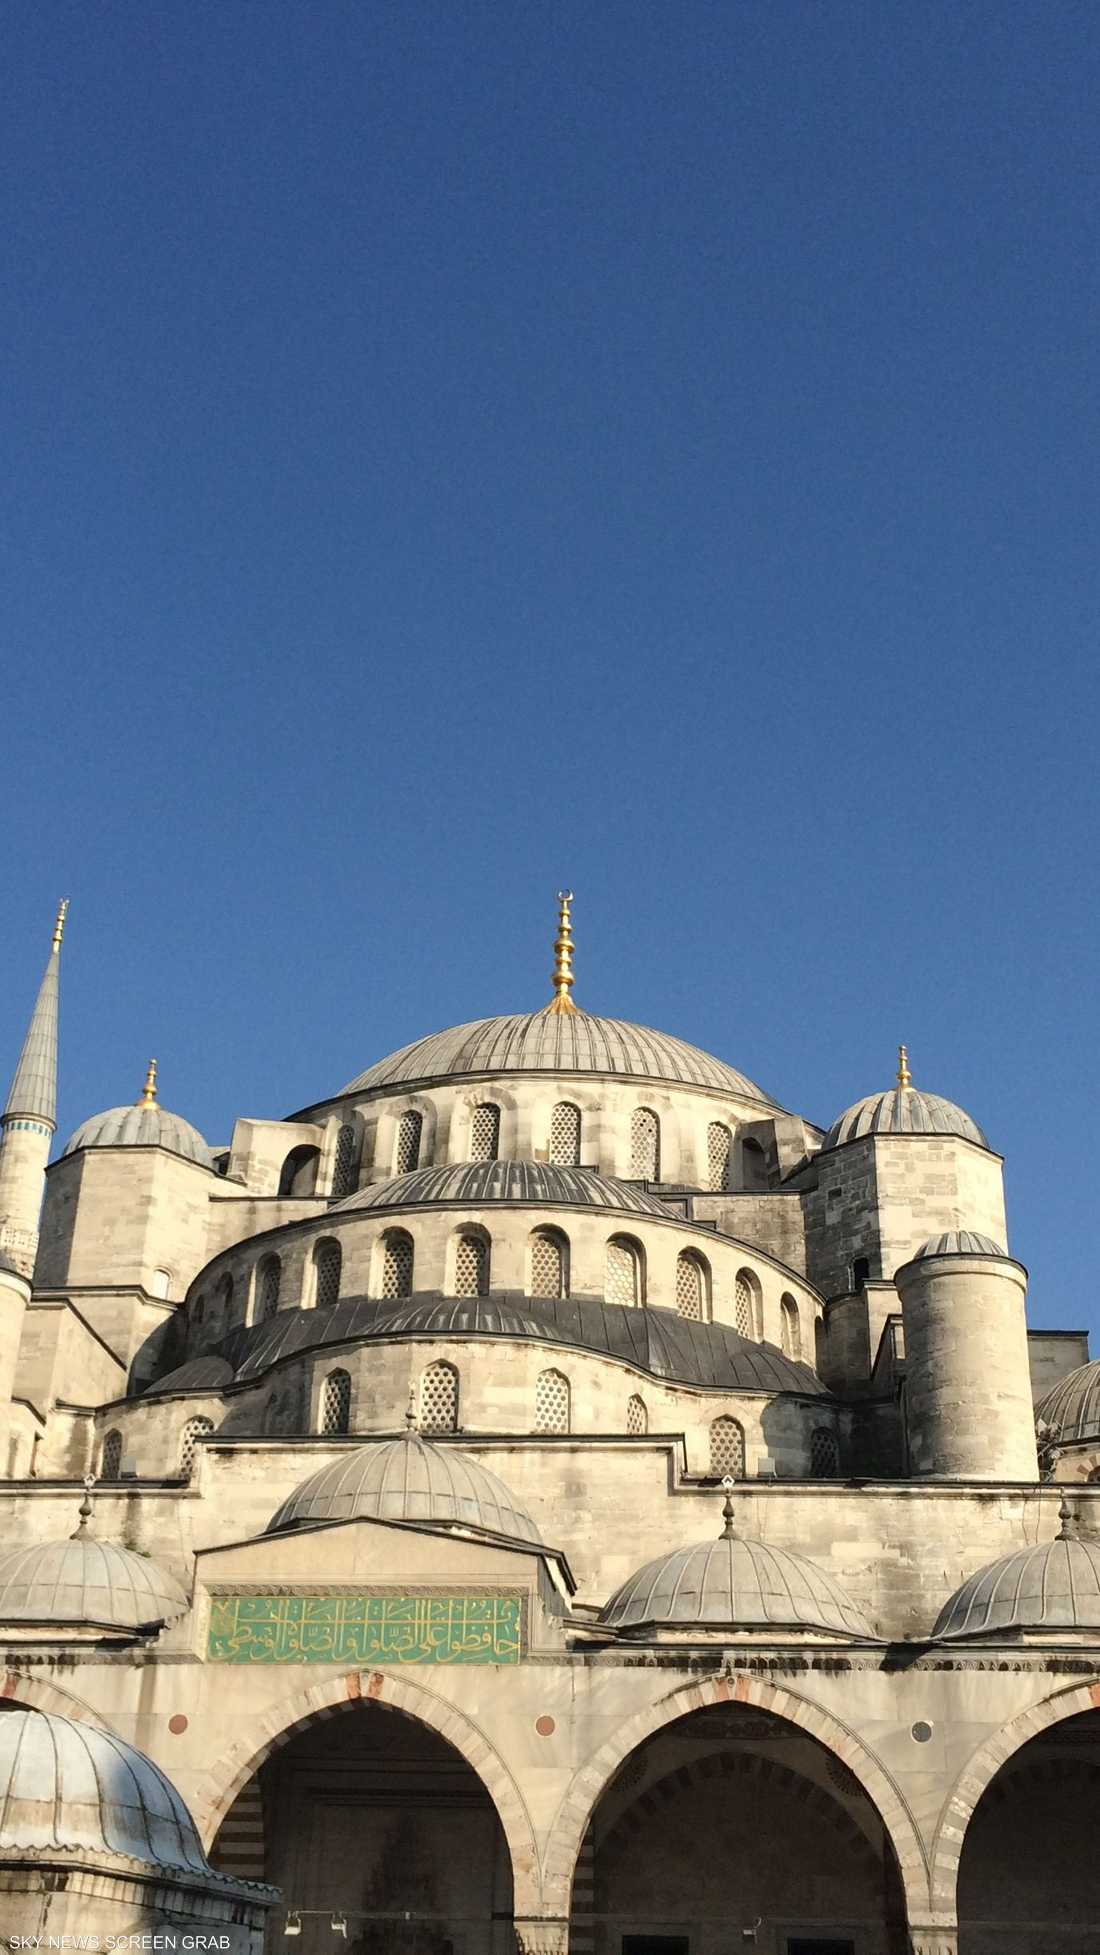 بدأ بناء الجامع عام 1609 وانتهى في 1616 وهو أحد أهم المعالم الإسلامية في تركيا والعالم الإسلامي